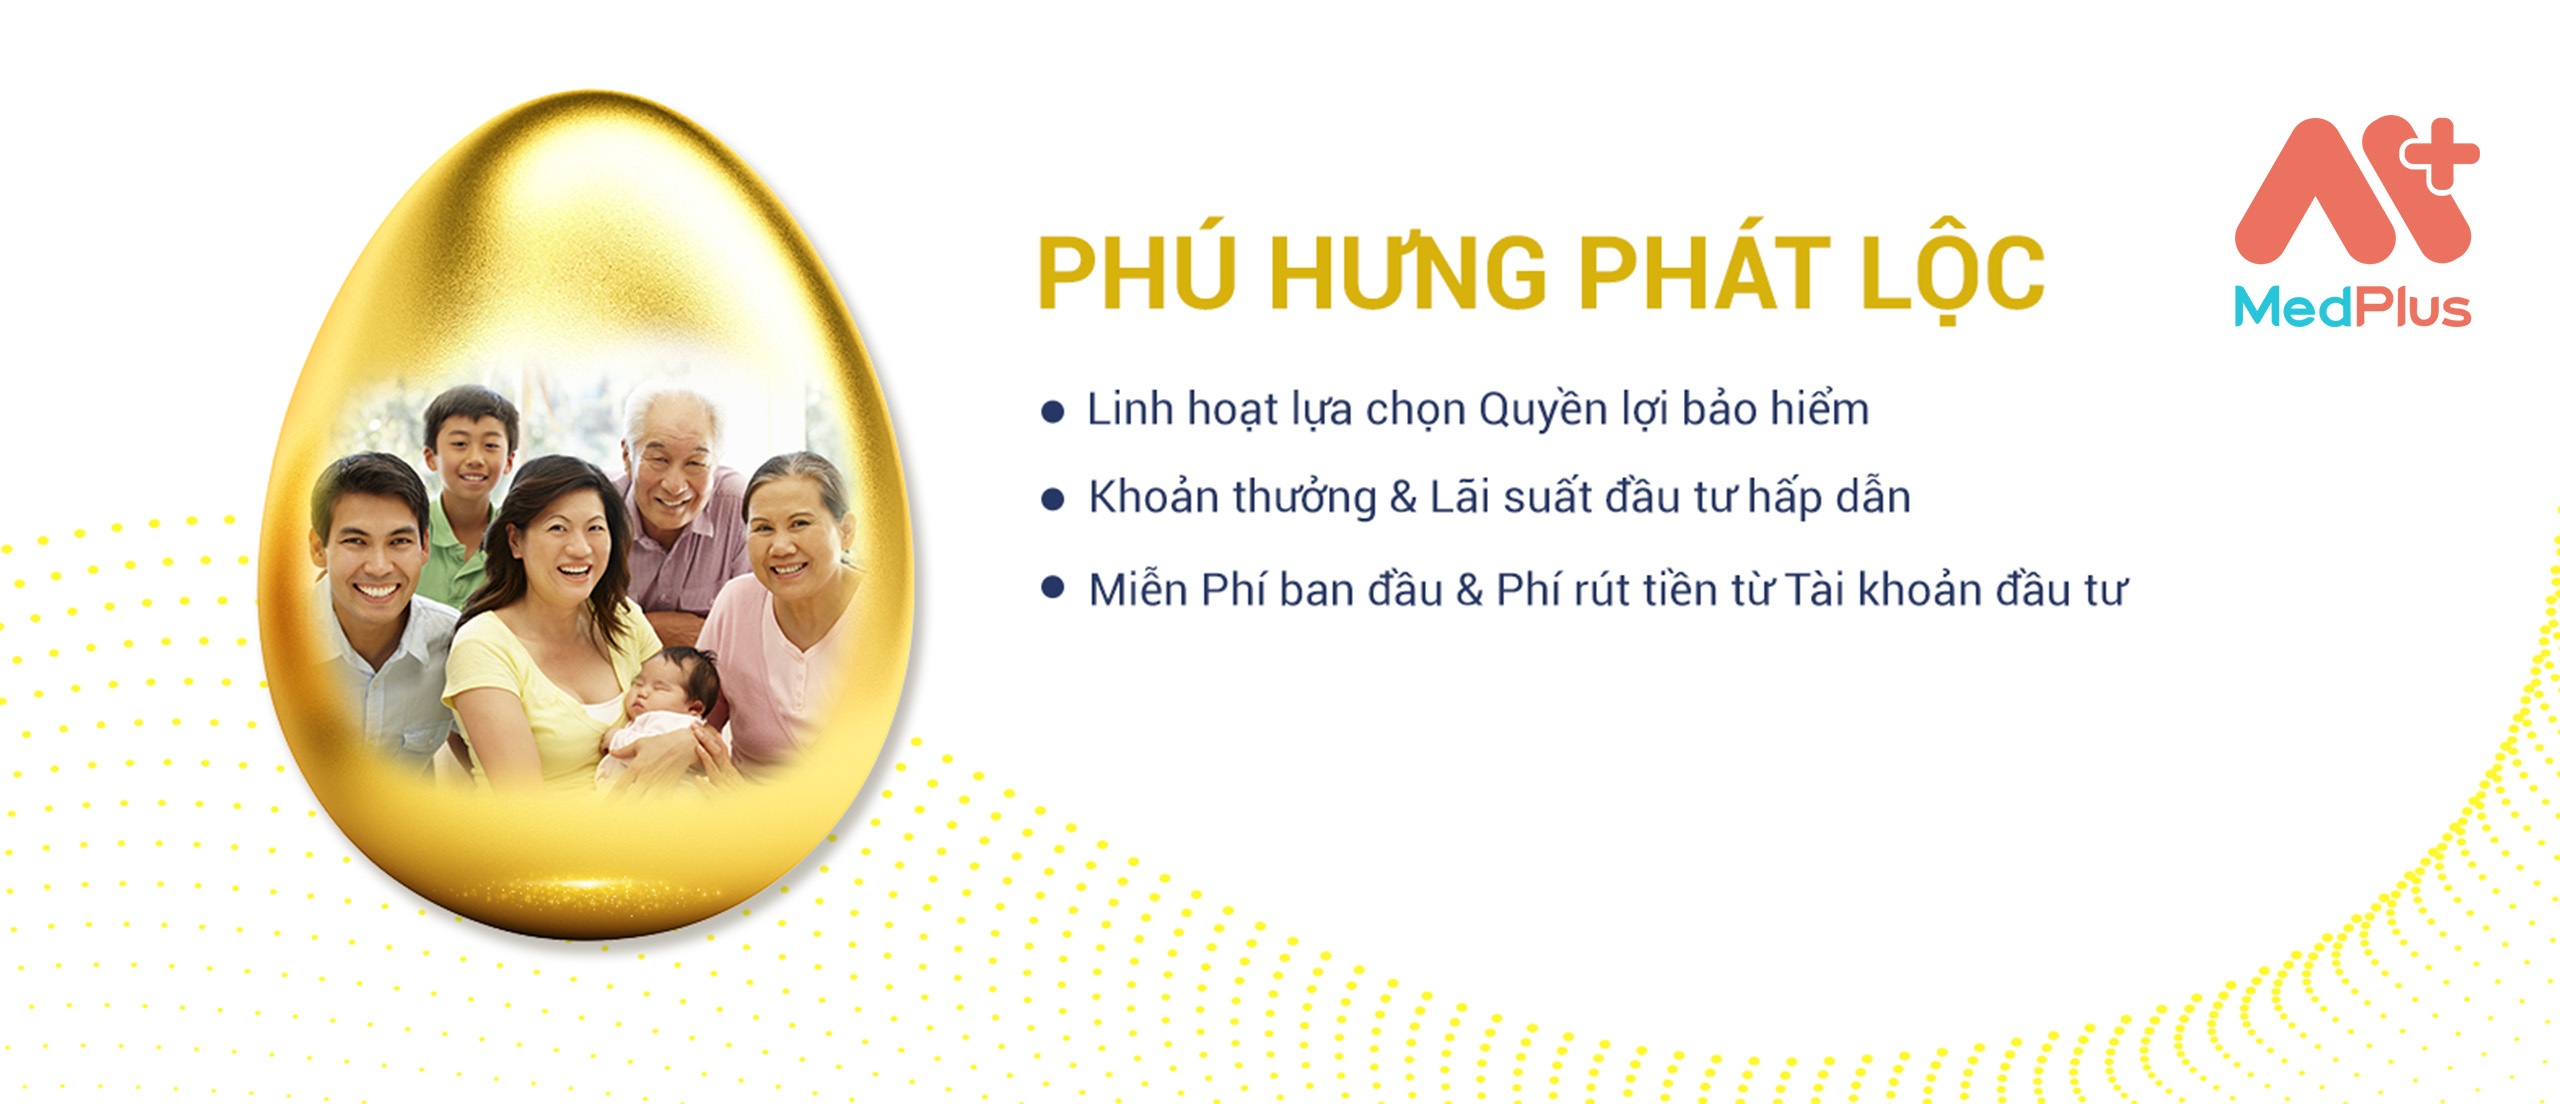 Gói bảo hiểm Phú Hưng Life - Phú Hưng Phát Lộc